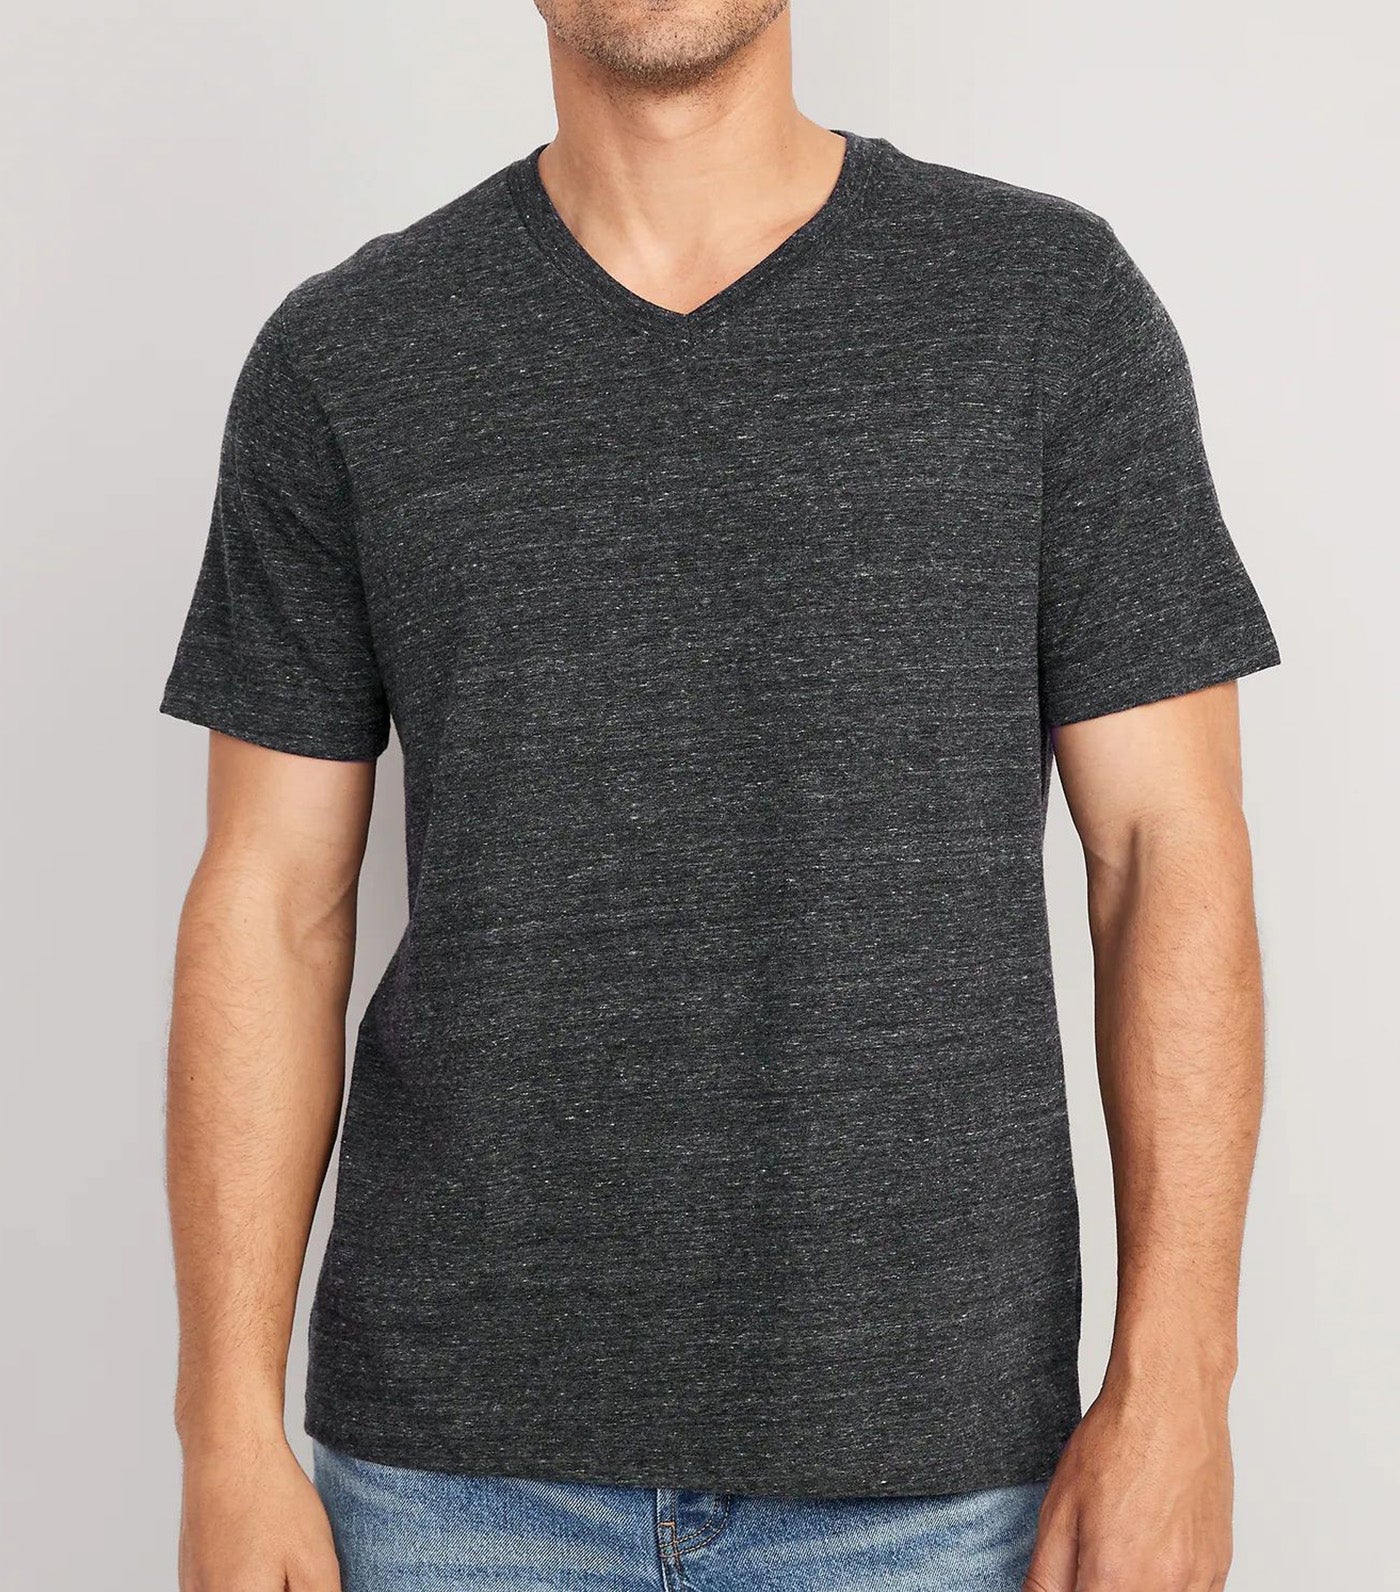 Soft-Washed V-Neck Slub-Knit T-Shirt for Men Charcoal Heather